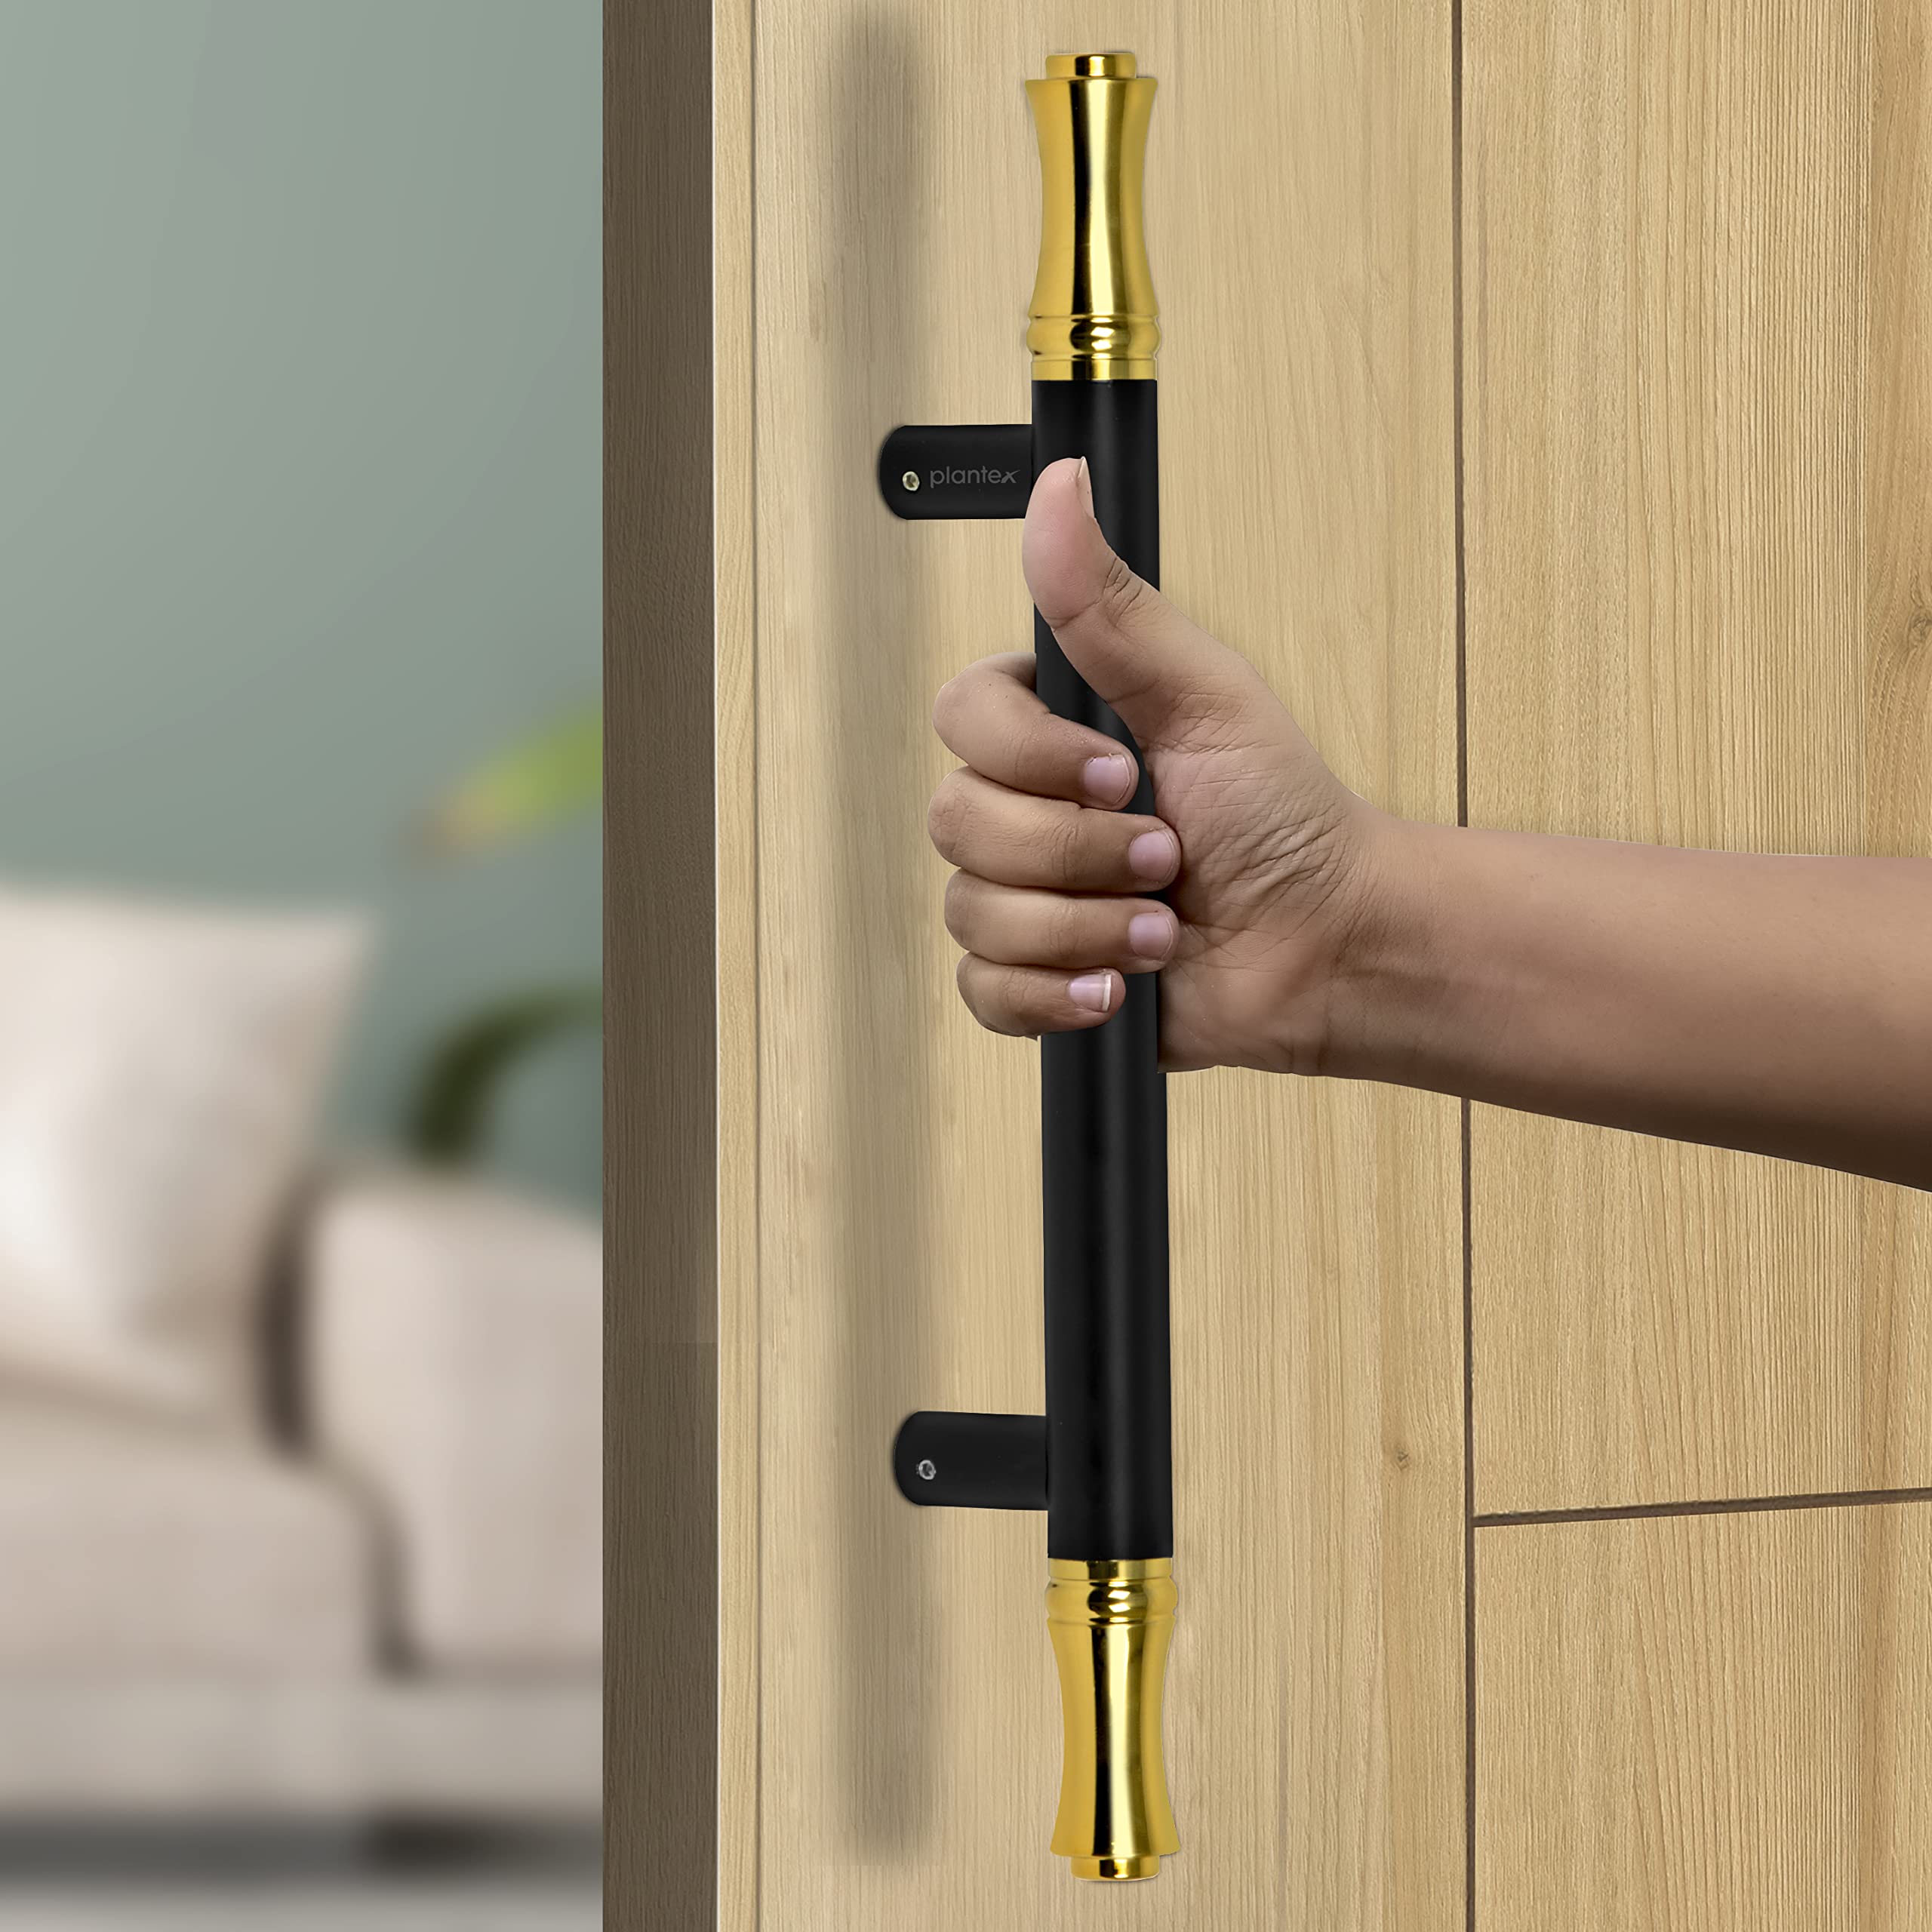 Plantex Main Door Handle/Door & Home Decor/14 Inch Main Door Handle/Door Pull Push Handle – Pack of 1 (121,Black & Gold)